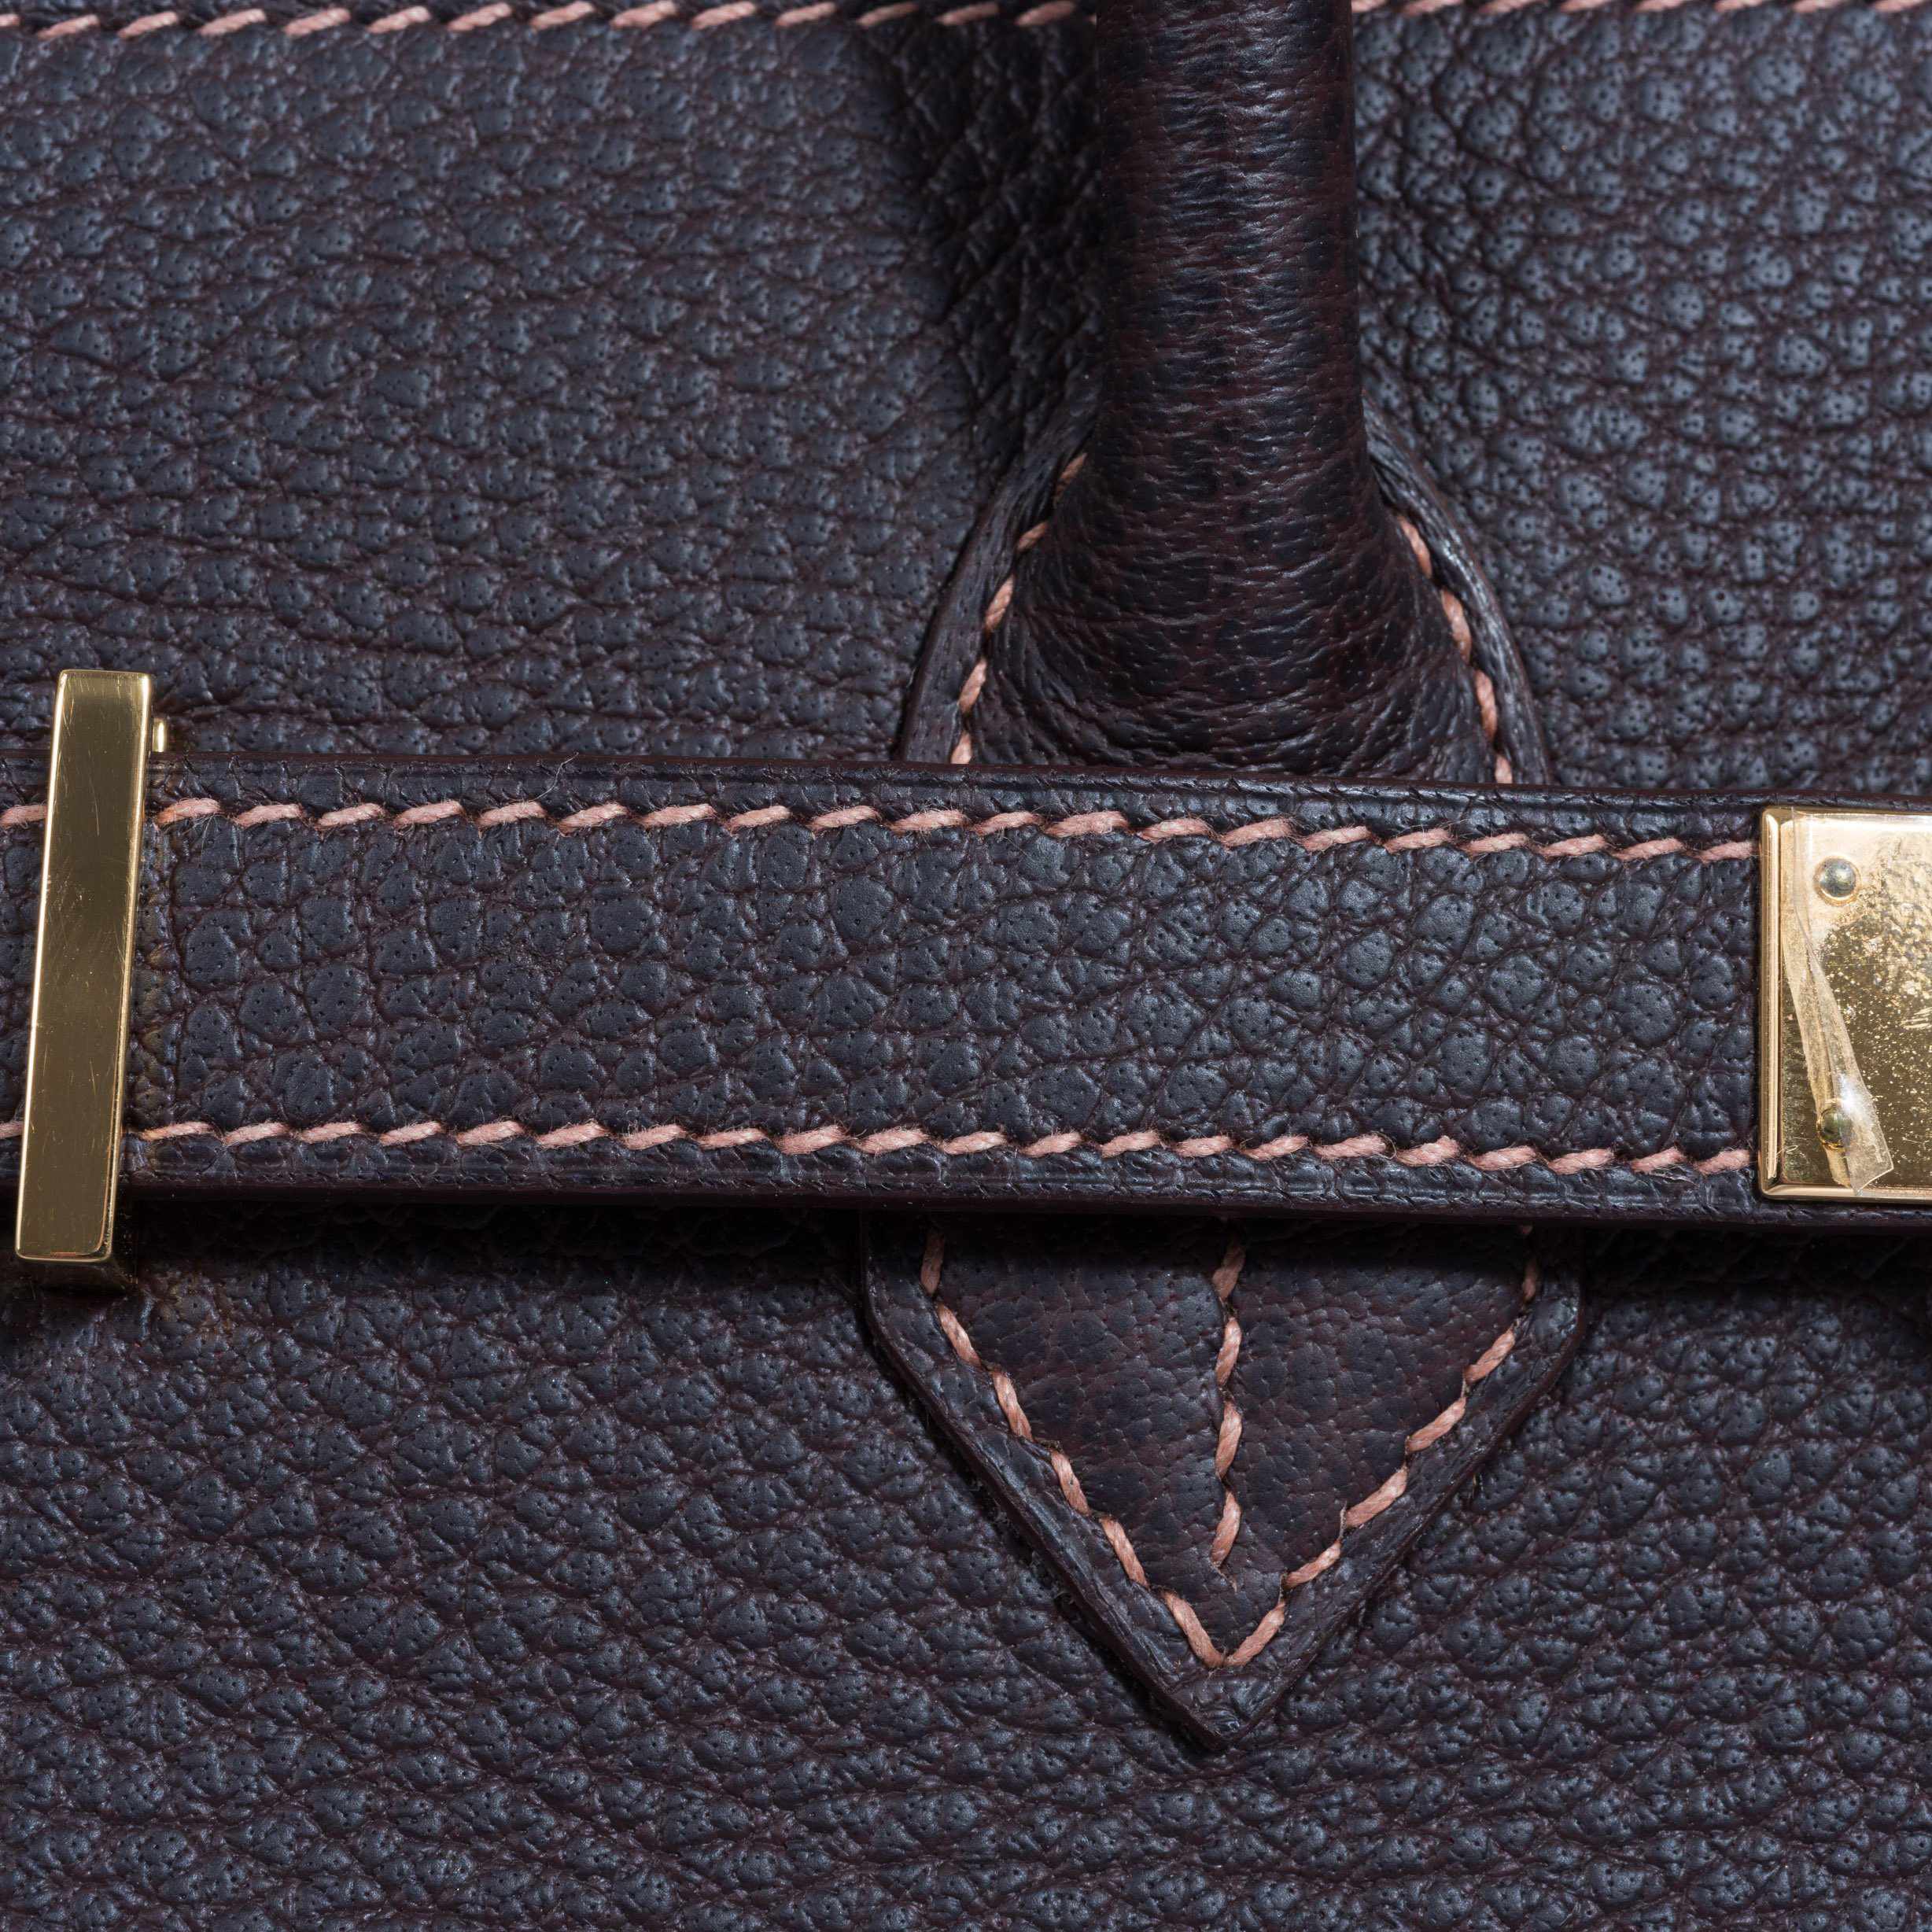 Hermès Birkin 35 Havane Fjord Special Stitching Gold Hardware